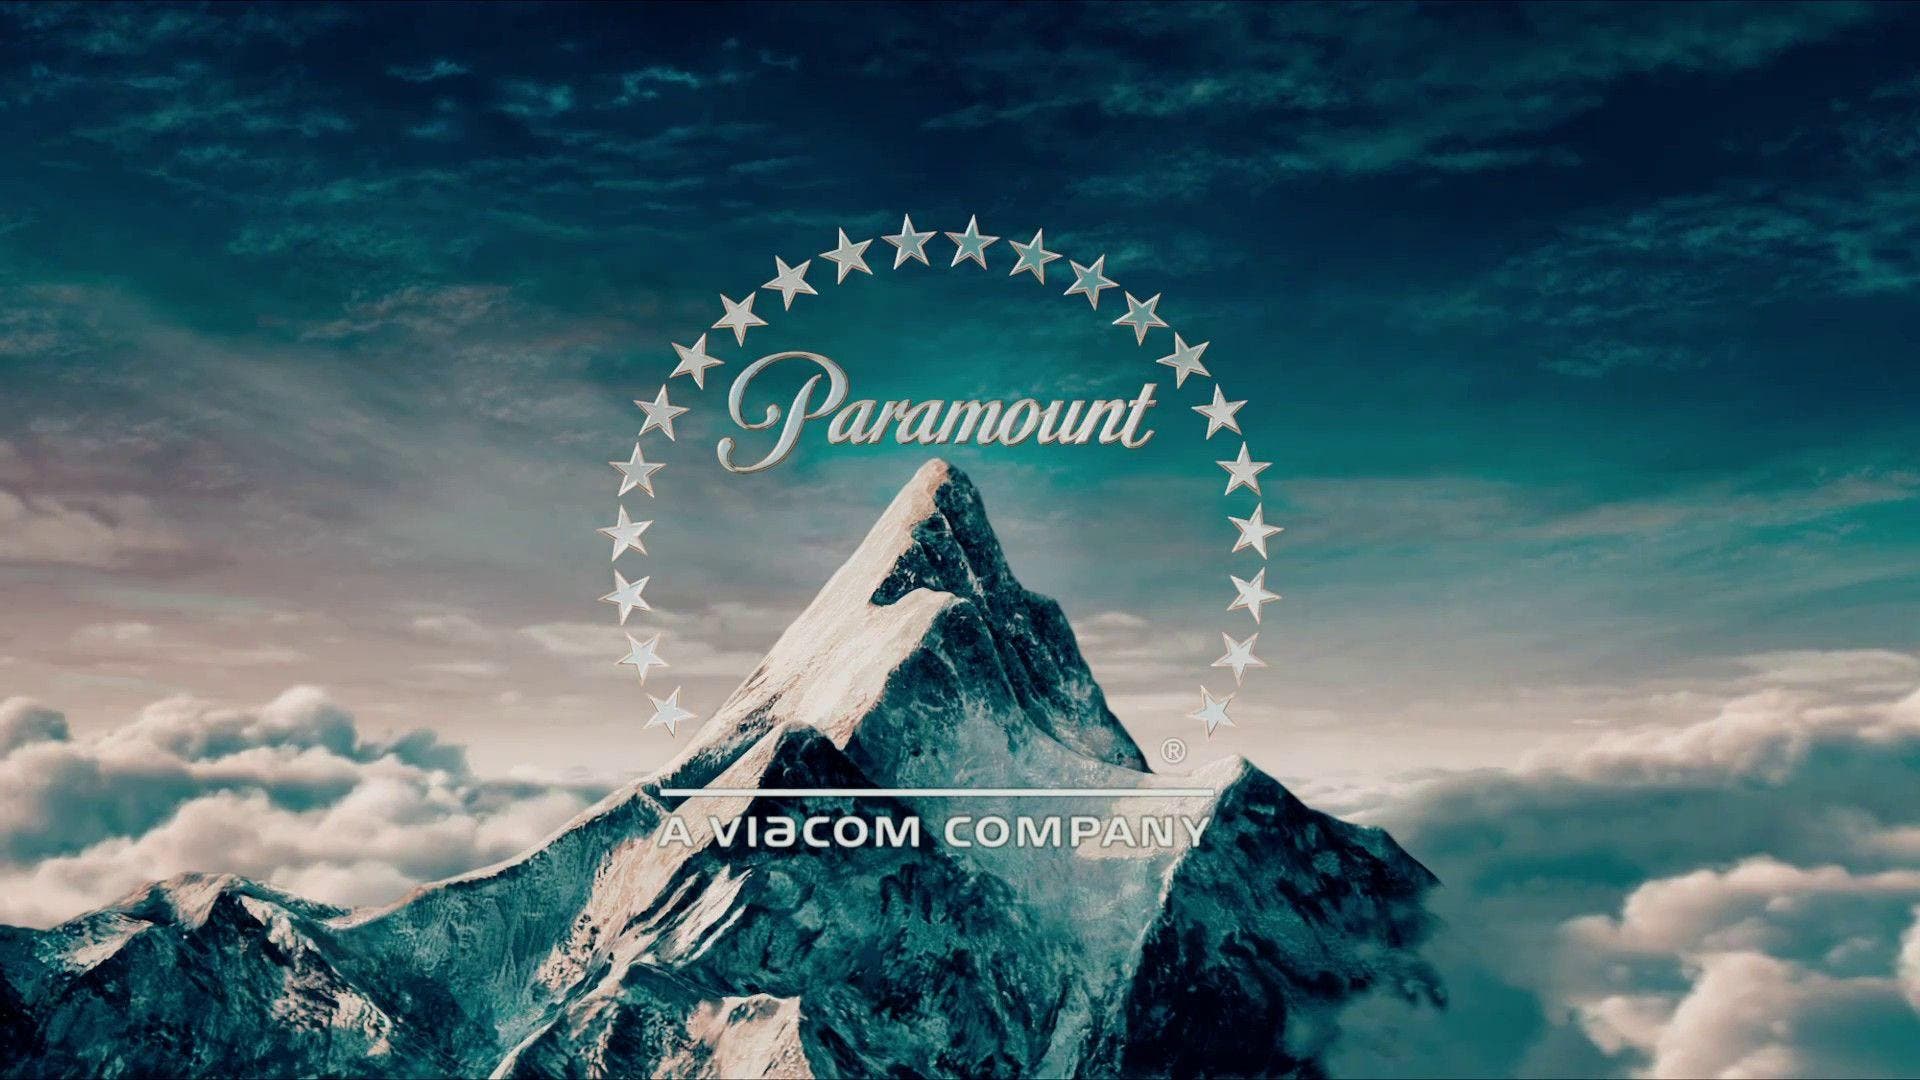 Sony podría adquirir Paramount en colaboración con Apollo Global Management